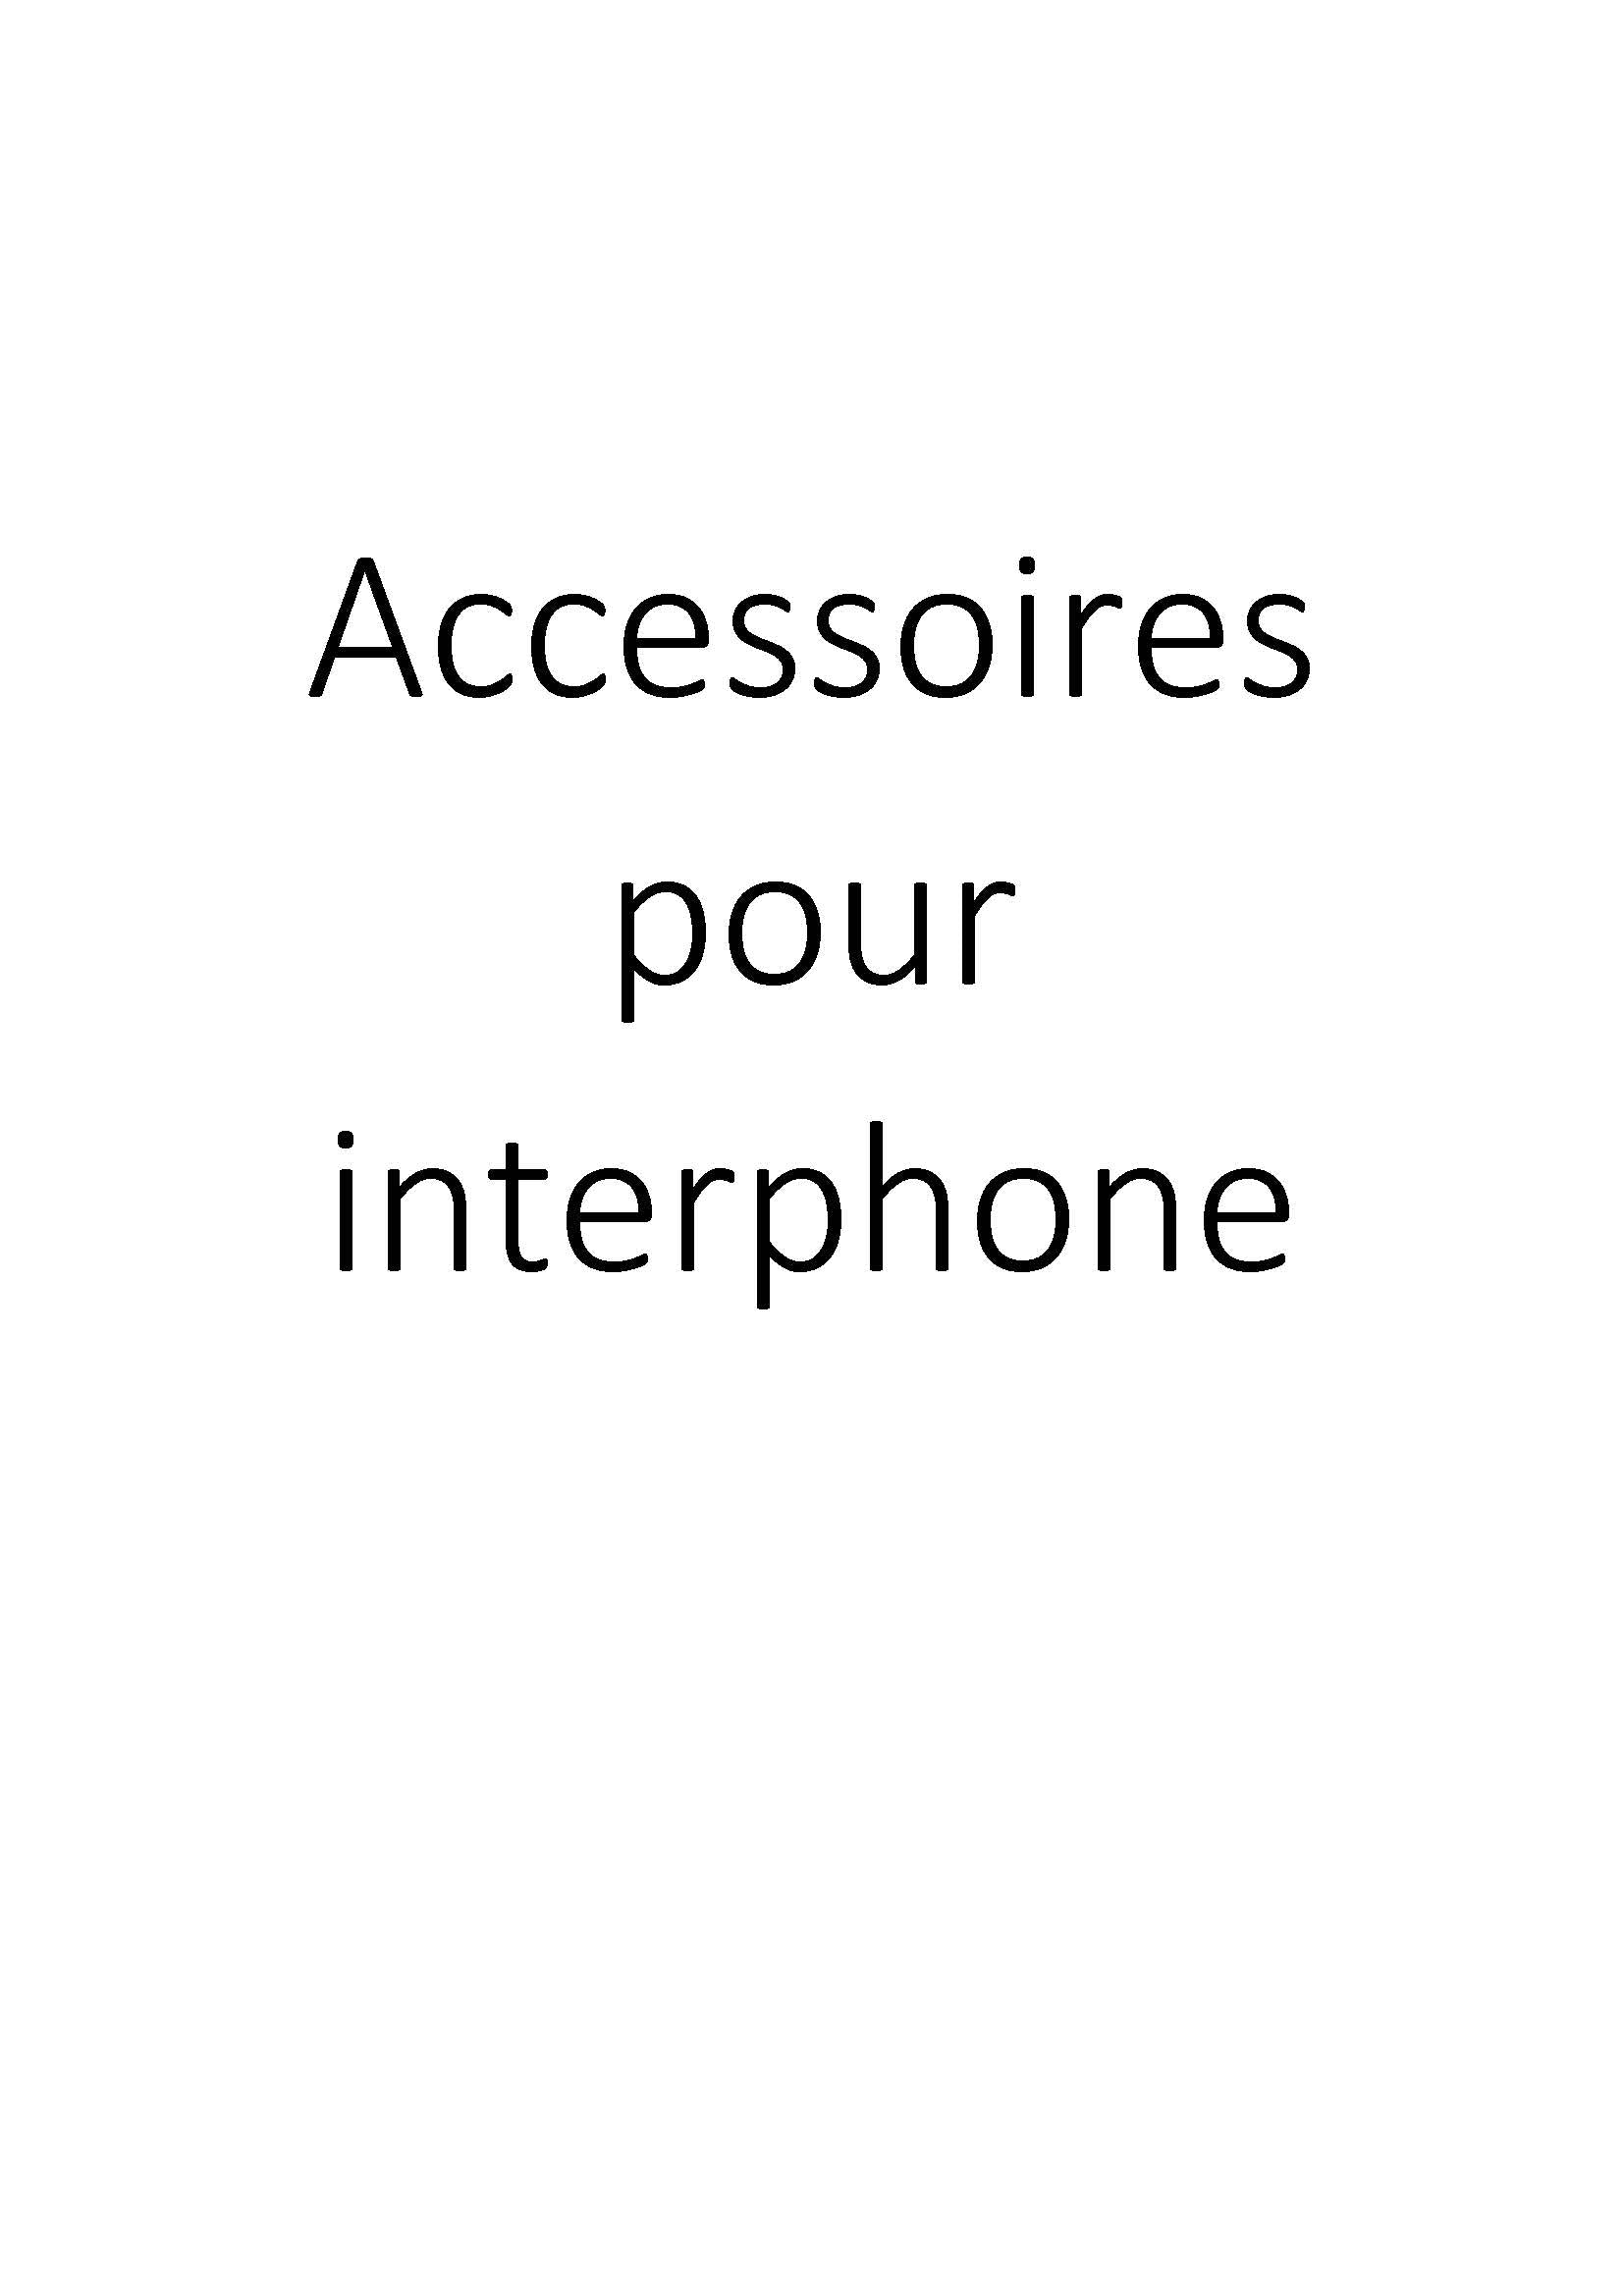 Accessoires pour interphone clicktofournisseur.com